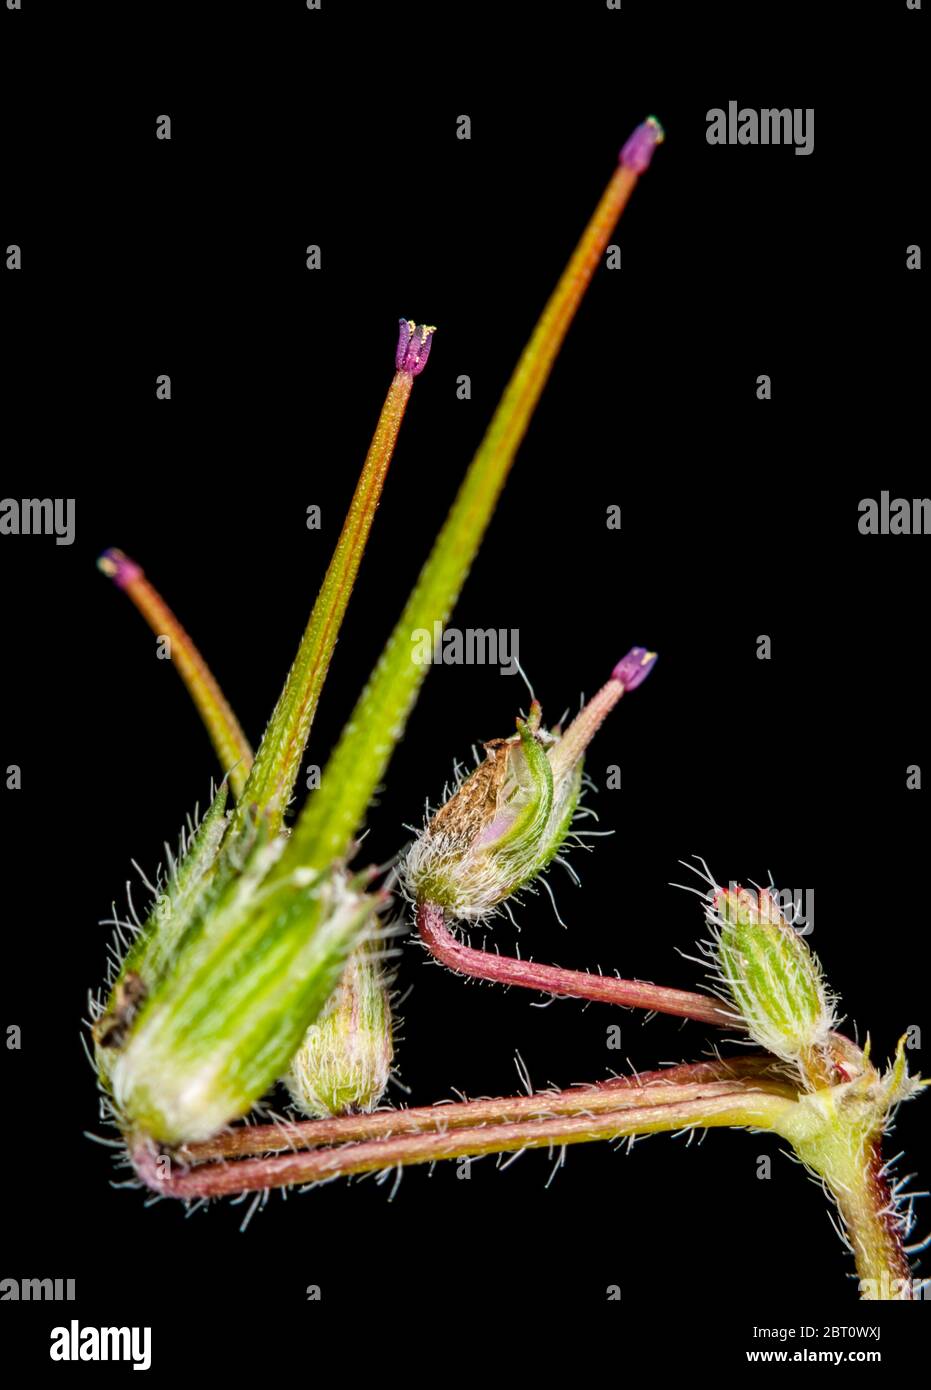 Macro-vista verticale del frutto allungato di una pianta a becco di gru (lat.: Geranio / Pelargonio) su sfondo nero. Foto Stock